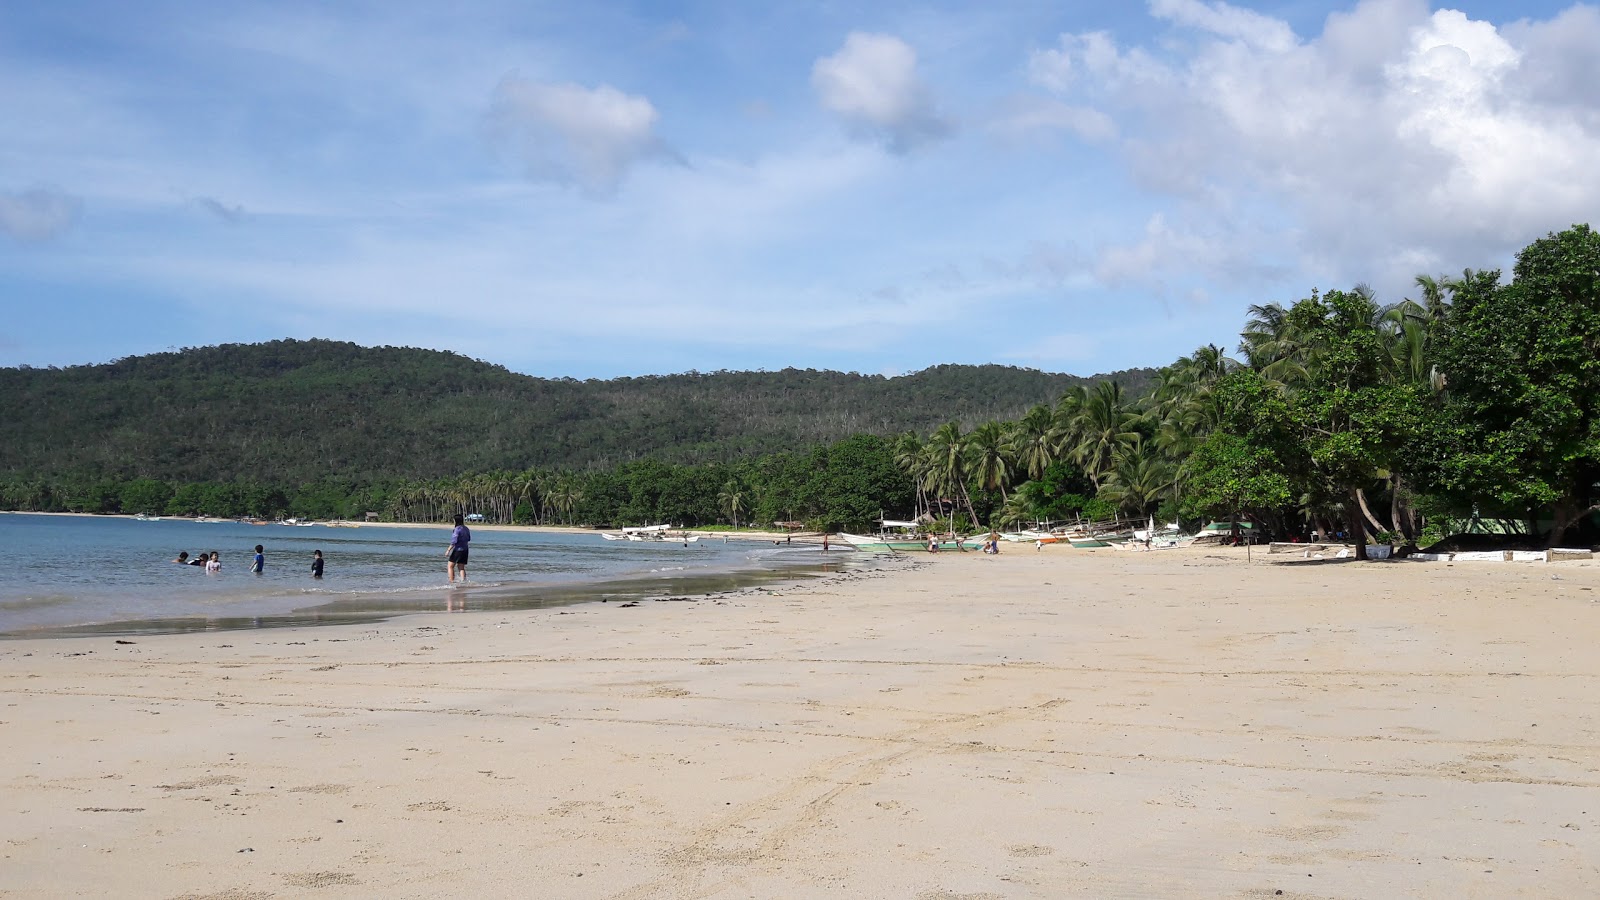 Fotografie cu Tagcawayan Beach cu o suprafață de nisip fin strălucitor